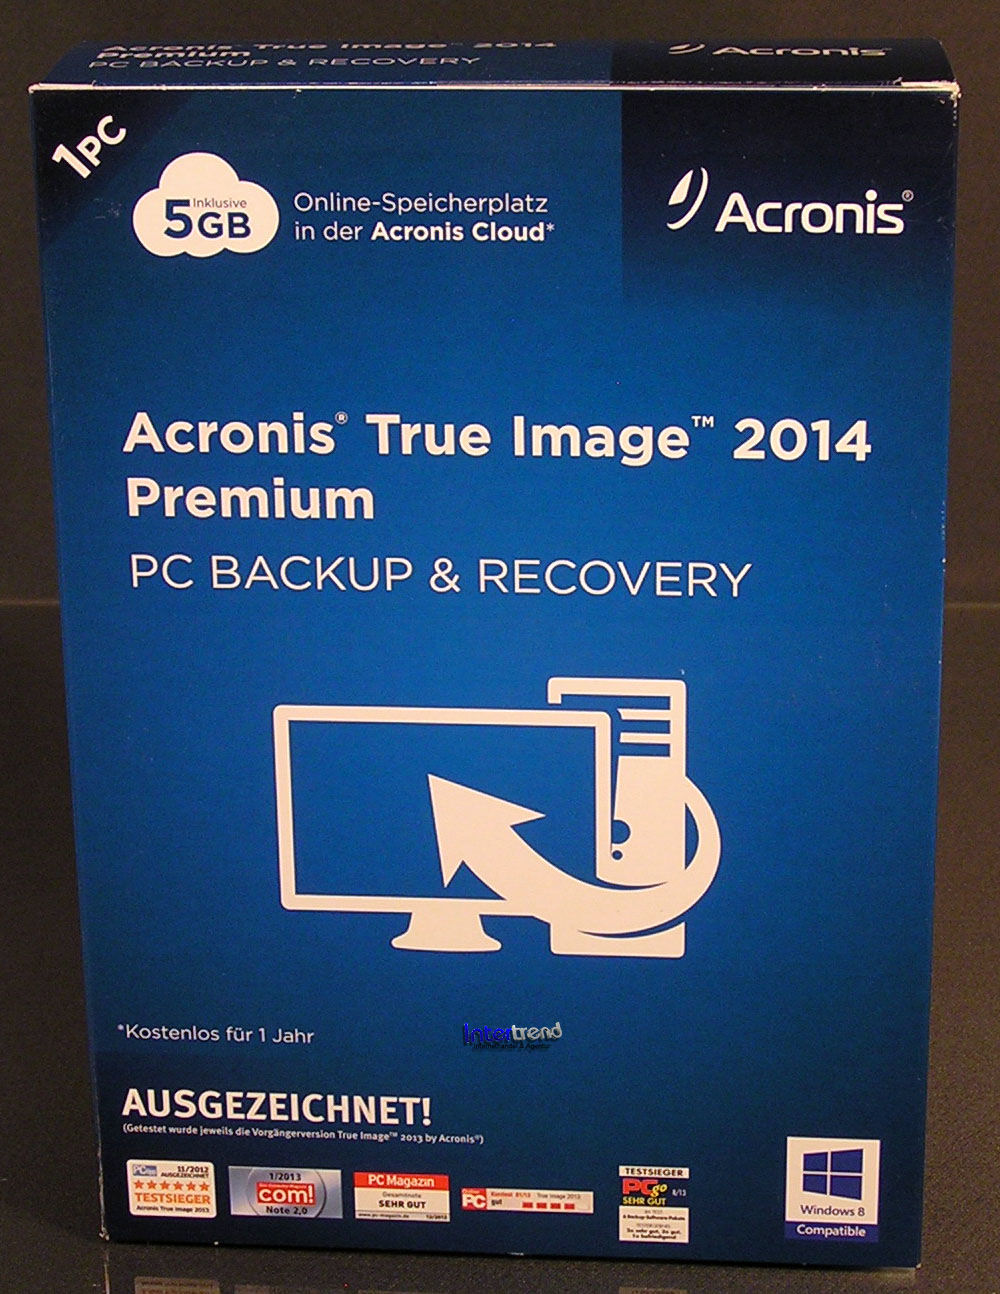 acronis true image premium 2014 build 6688